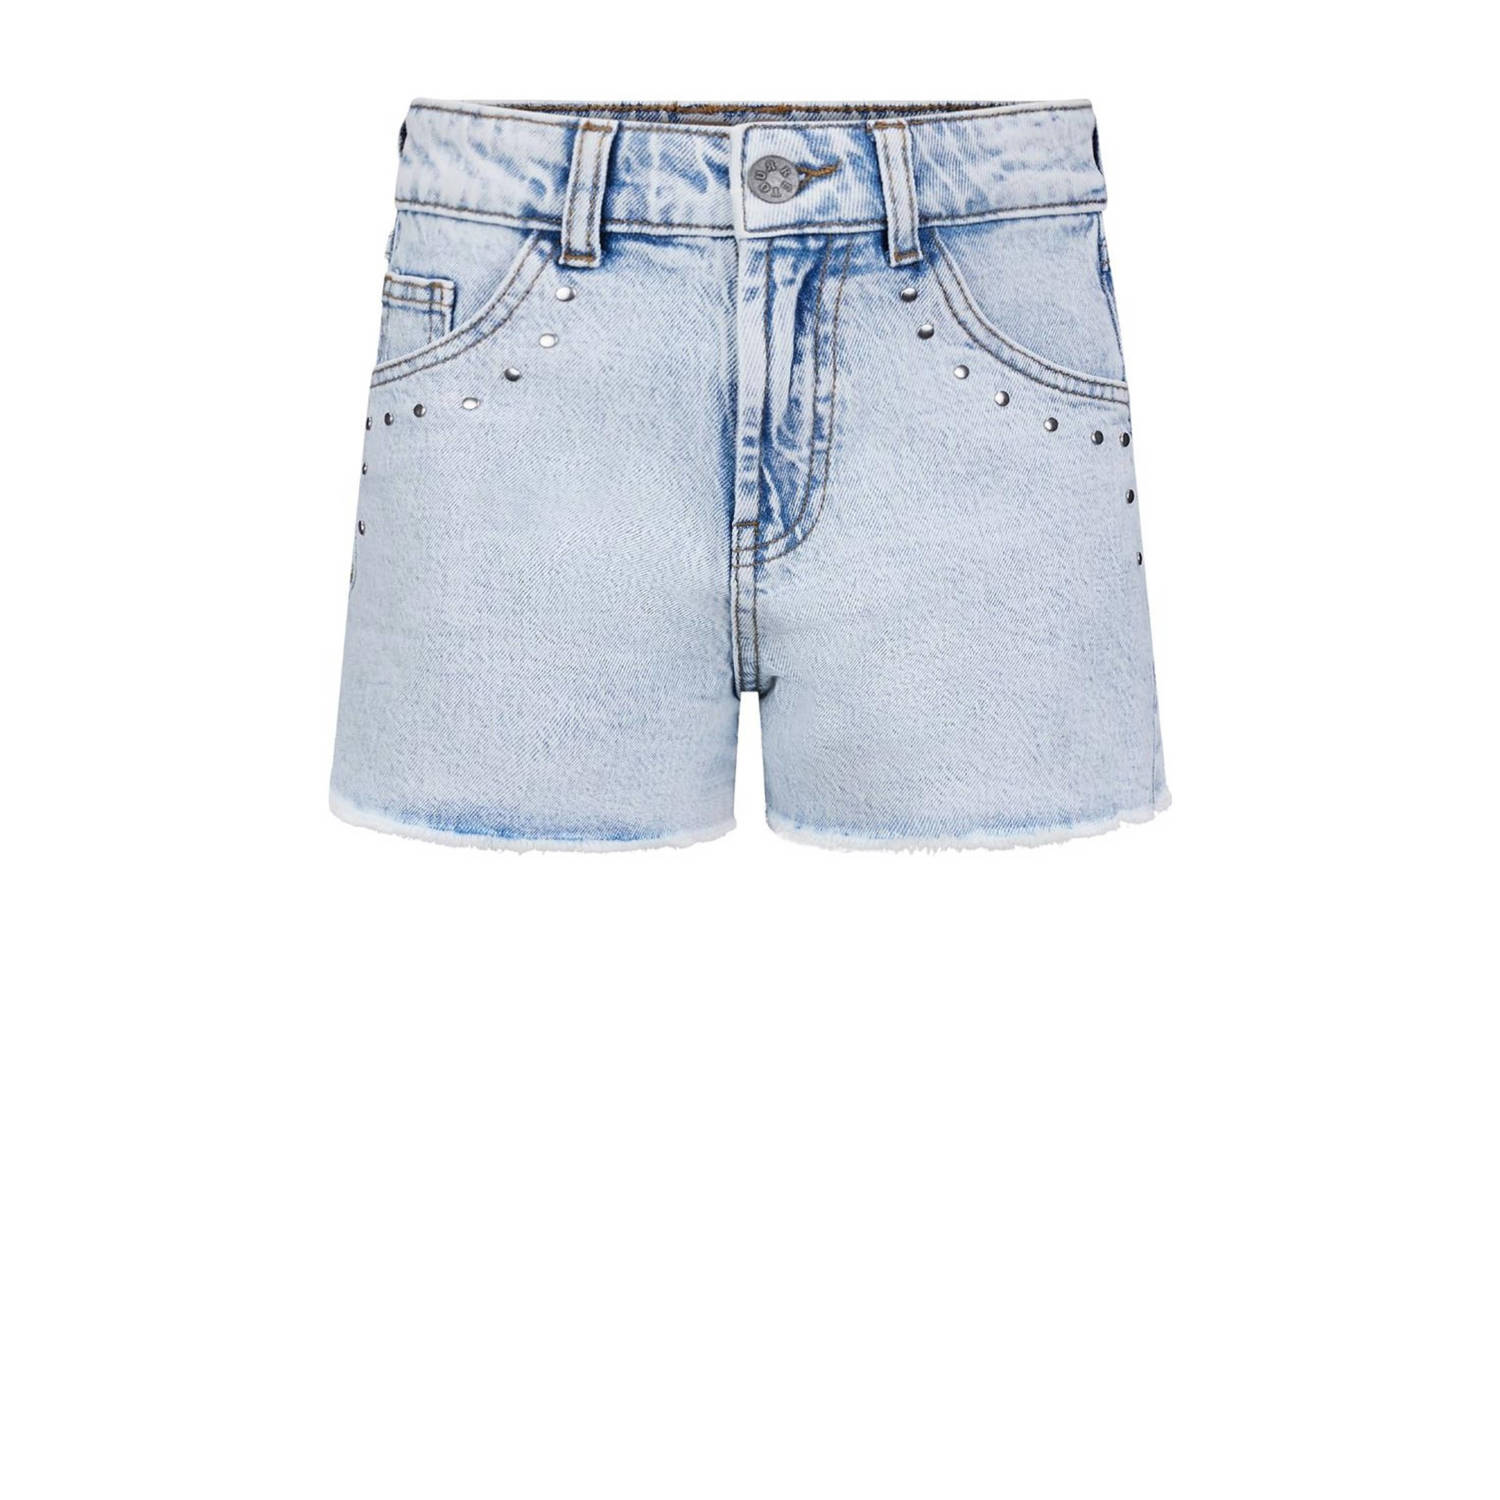 Retour Jeans denim short Amelie bleached blue denim Korte broek Blauw Meisjes Stretchdenim 116